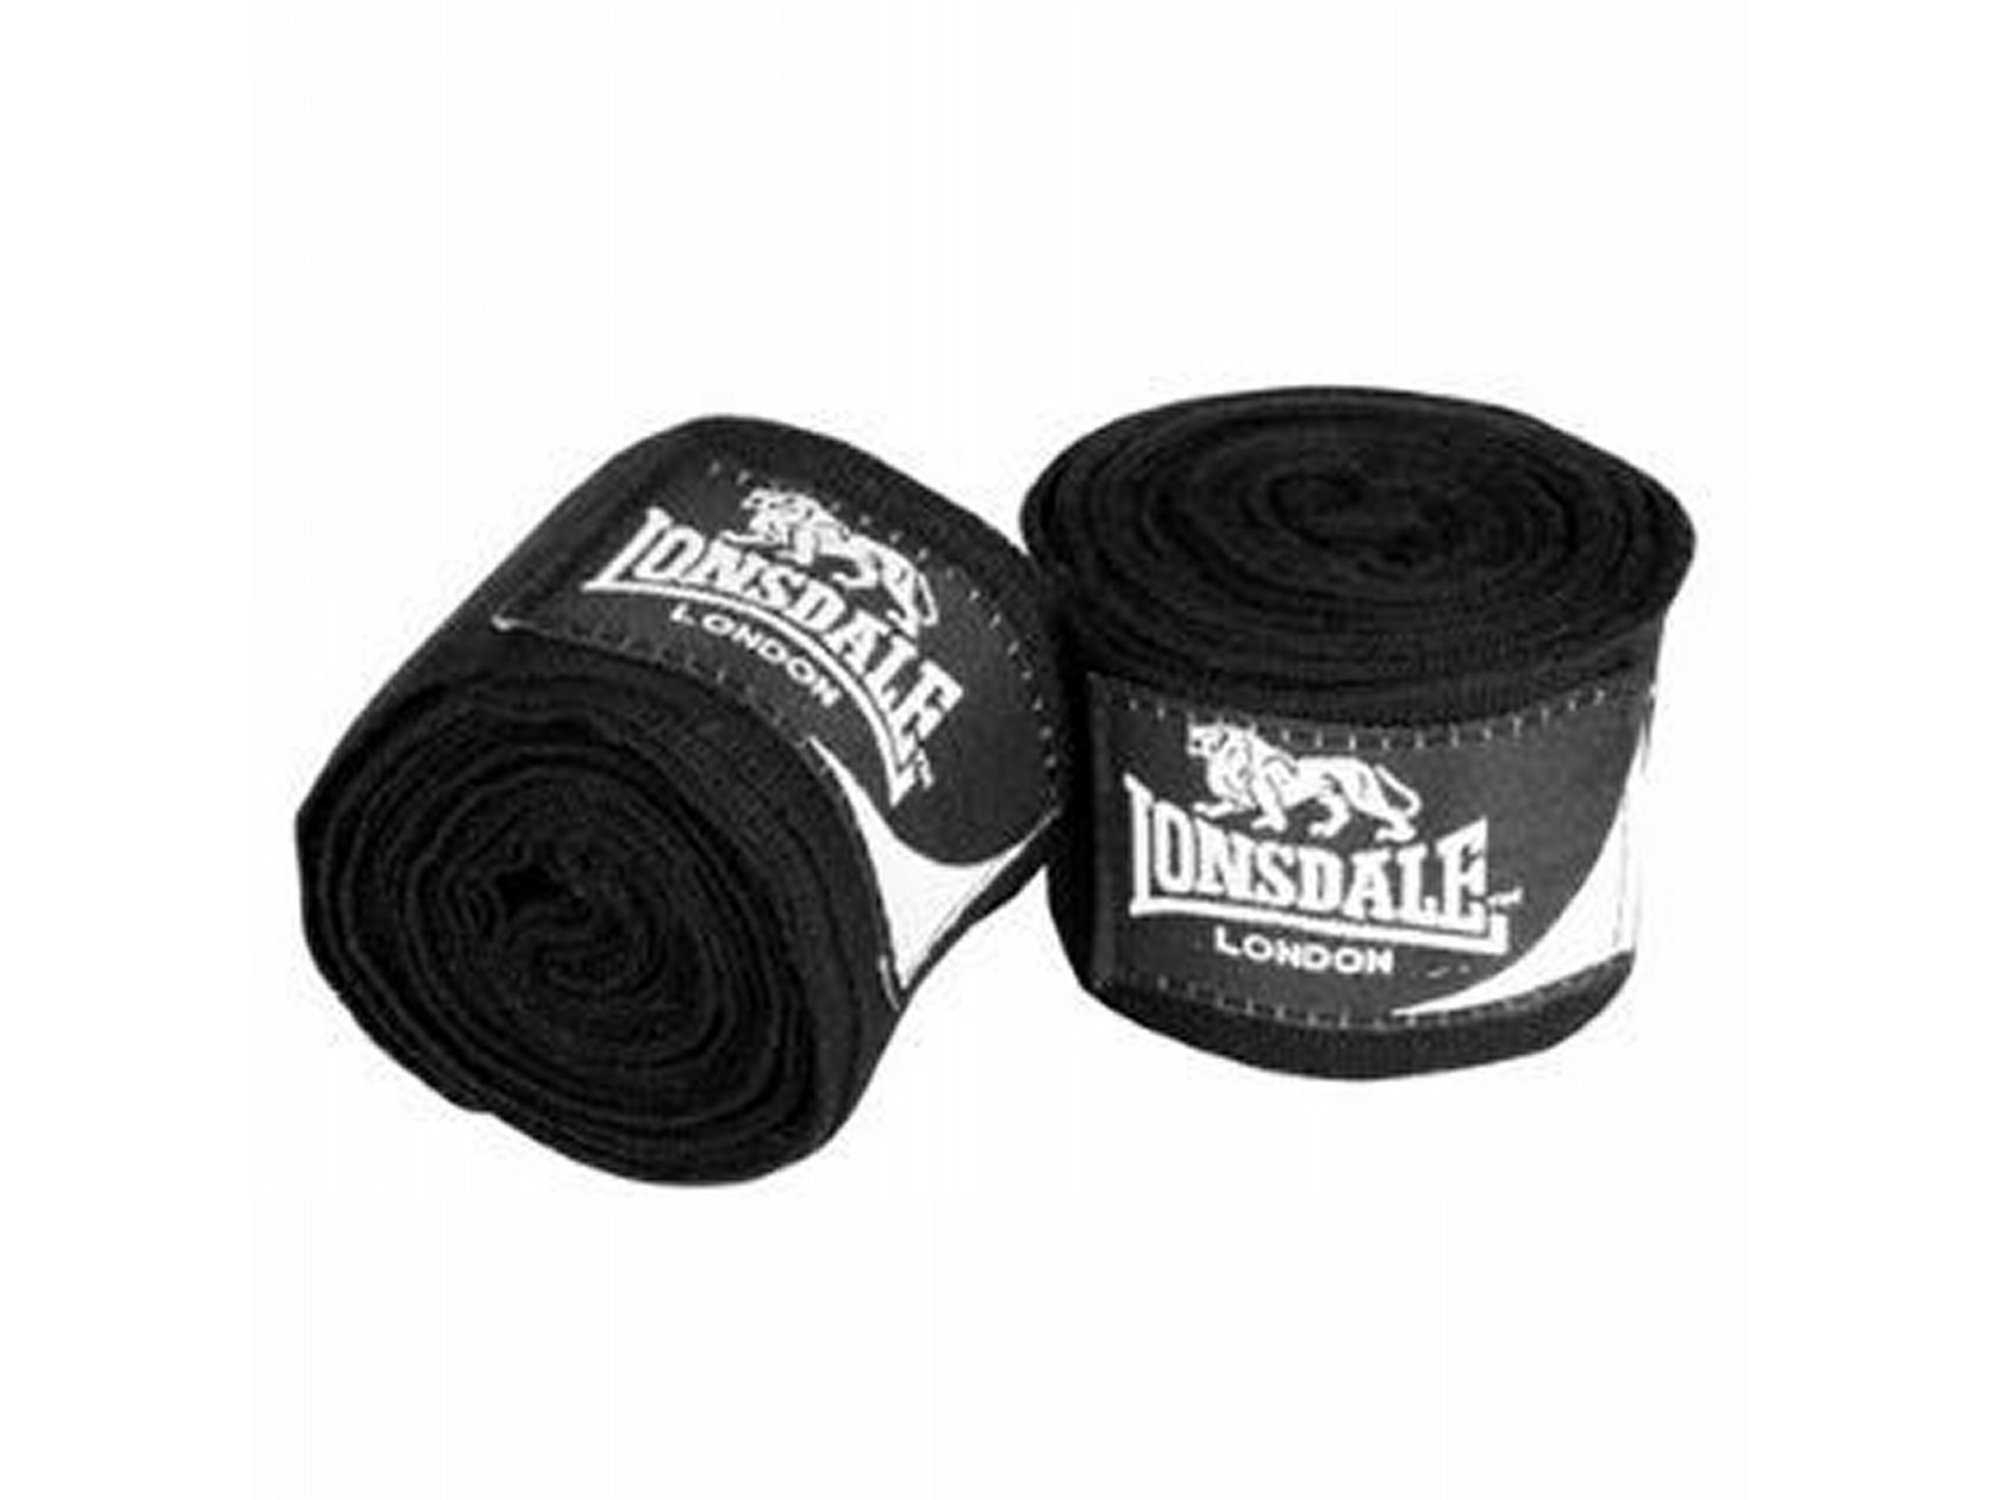 Lonsdale Bandažer 3,5m Handwrap30 black 762371-03